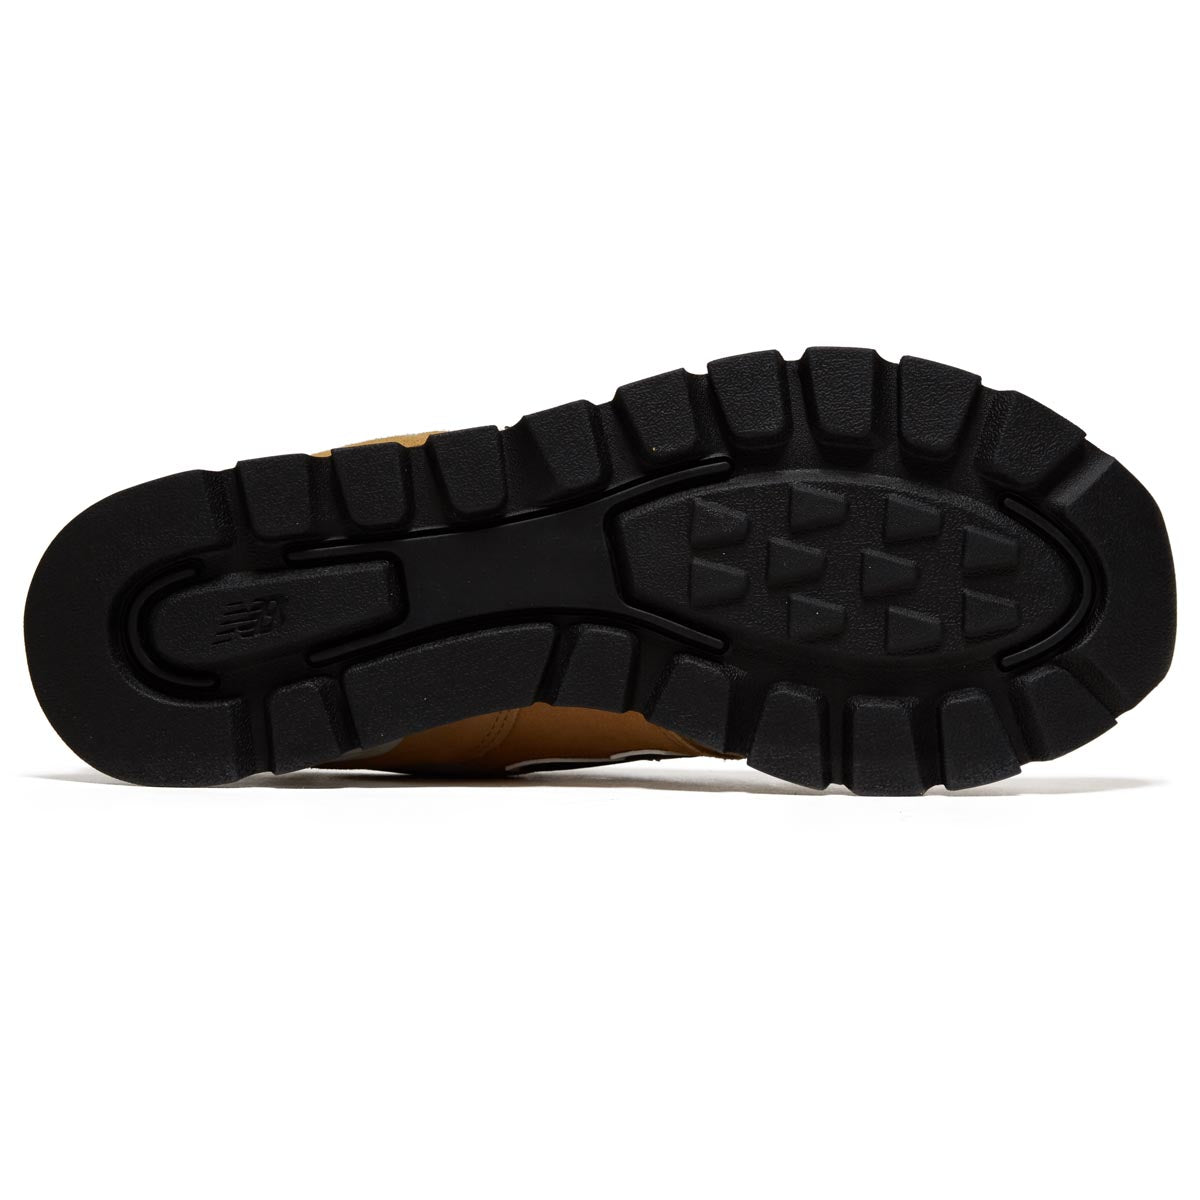 New Balance 574 Rugged Shoes - Beige/Black image 4